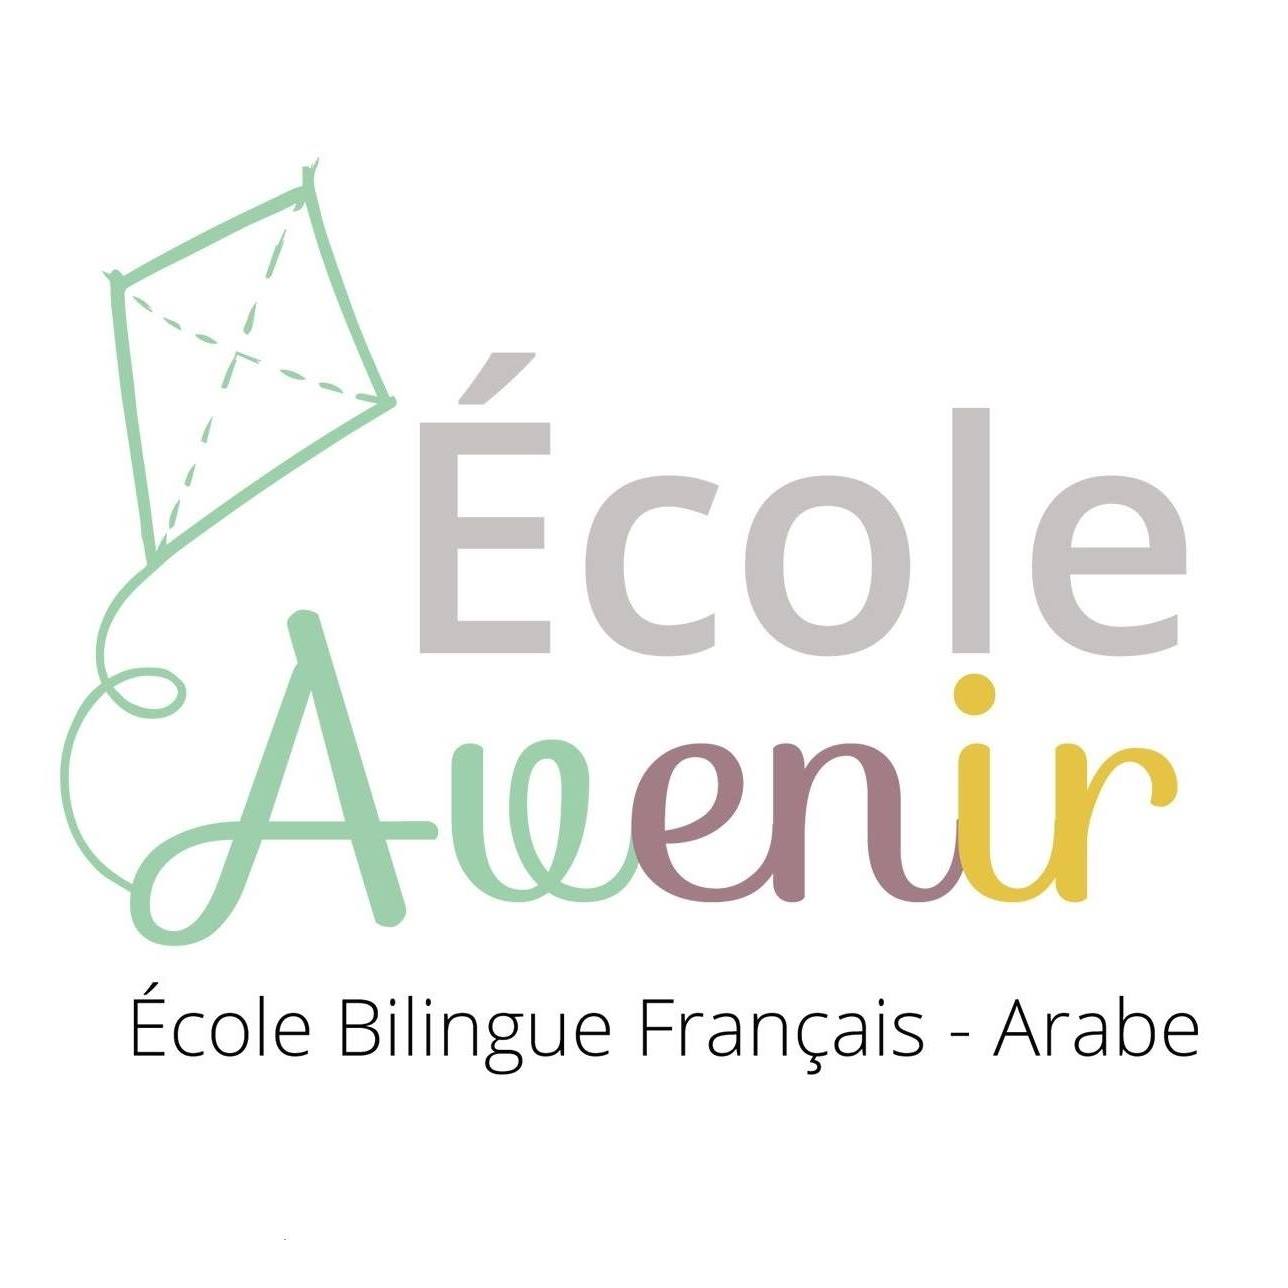 Ecole avenir Bilingue - Français et Arabe